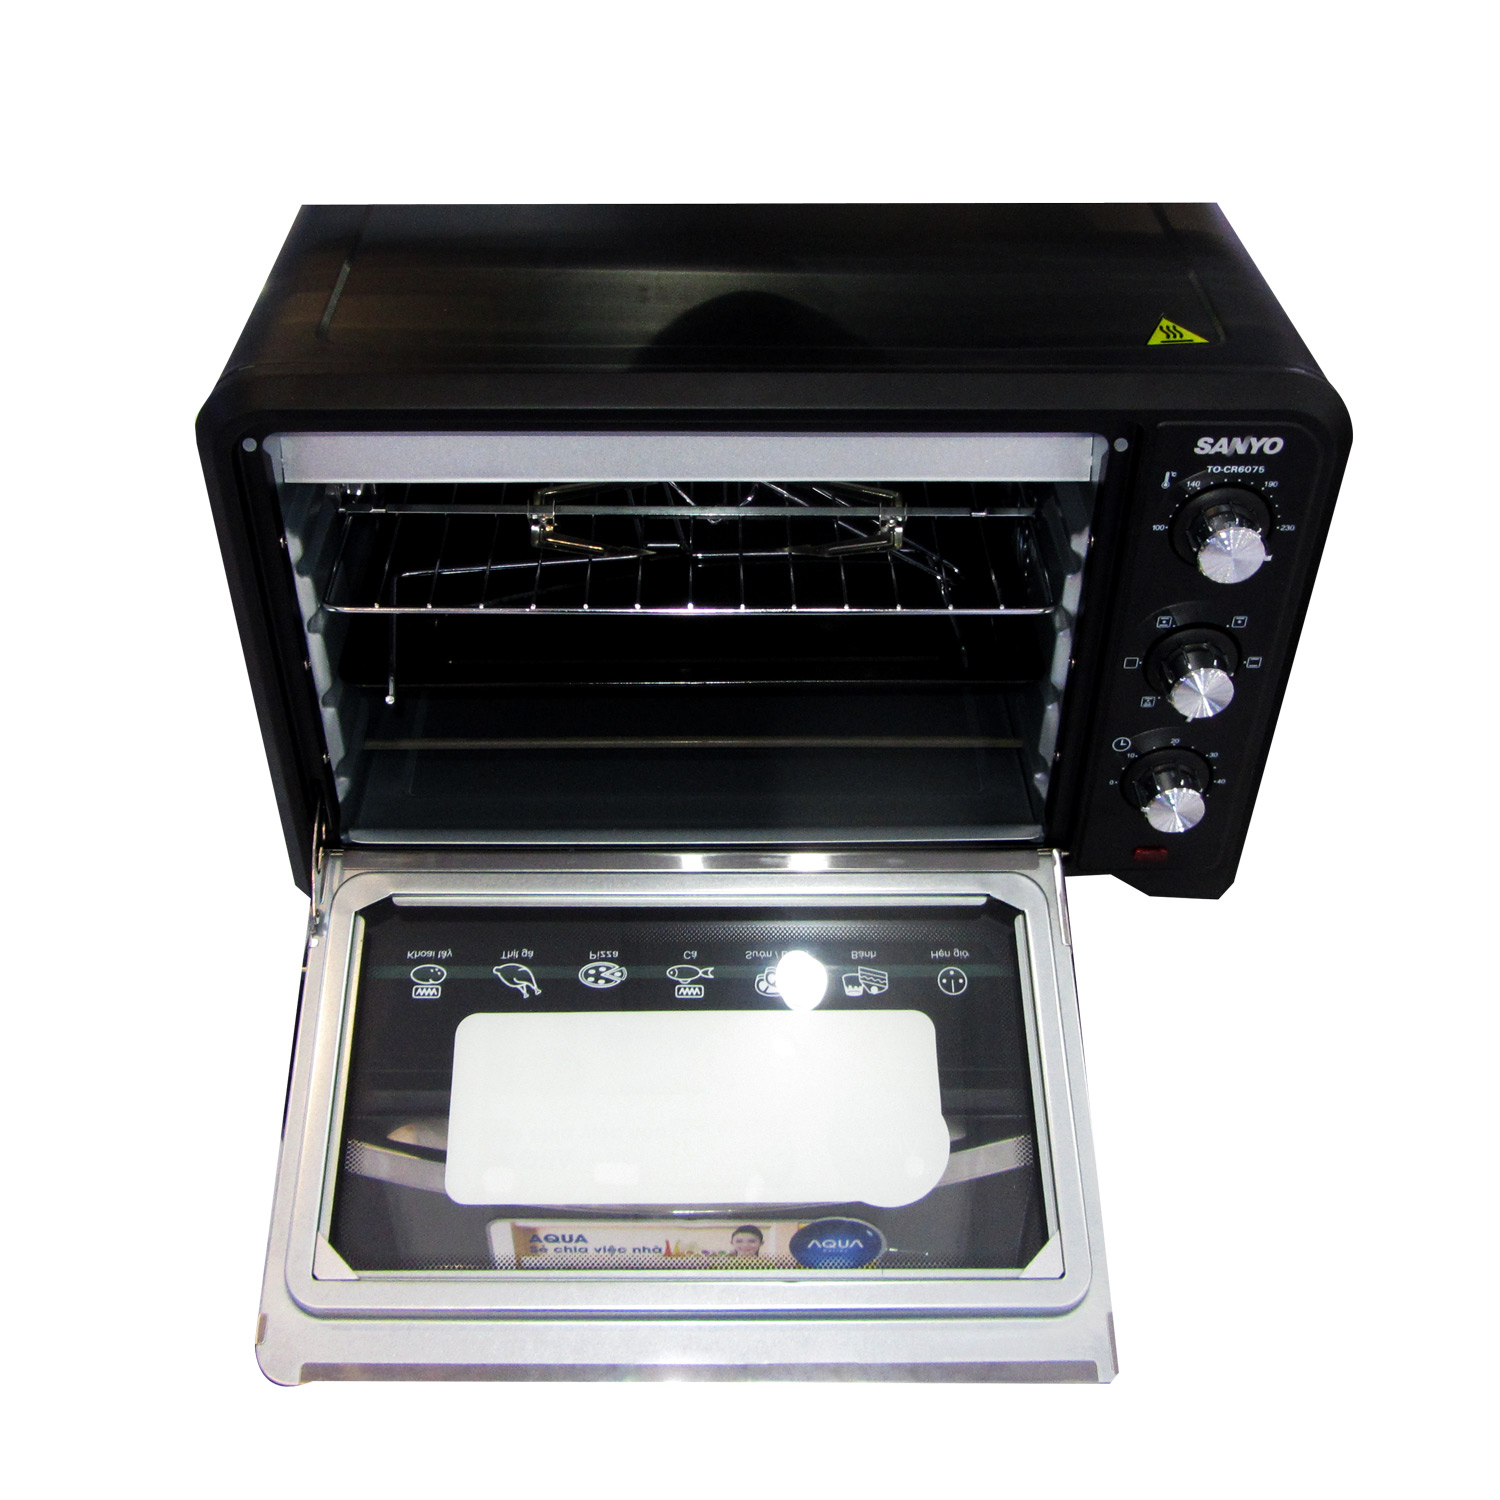 LÒ NƯỚNG 35L SANYO TO-CR6075 có chức năng nướng đối lưu nhiệt và 6 chức năng nướng hiện đại chất liệu lò nướng bằng inox bền chắc cửa kiếng 2 lớp an toàn với người sử dụng